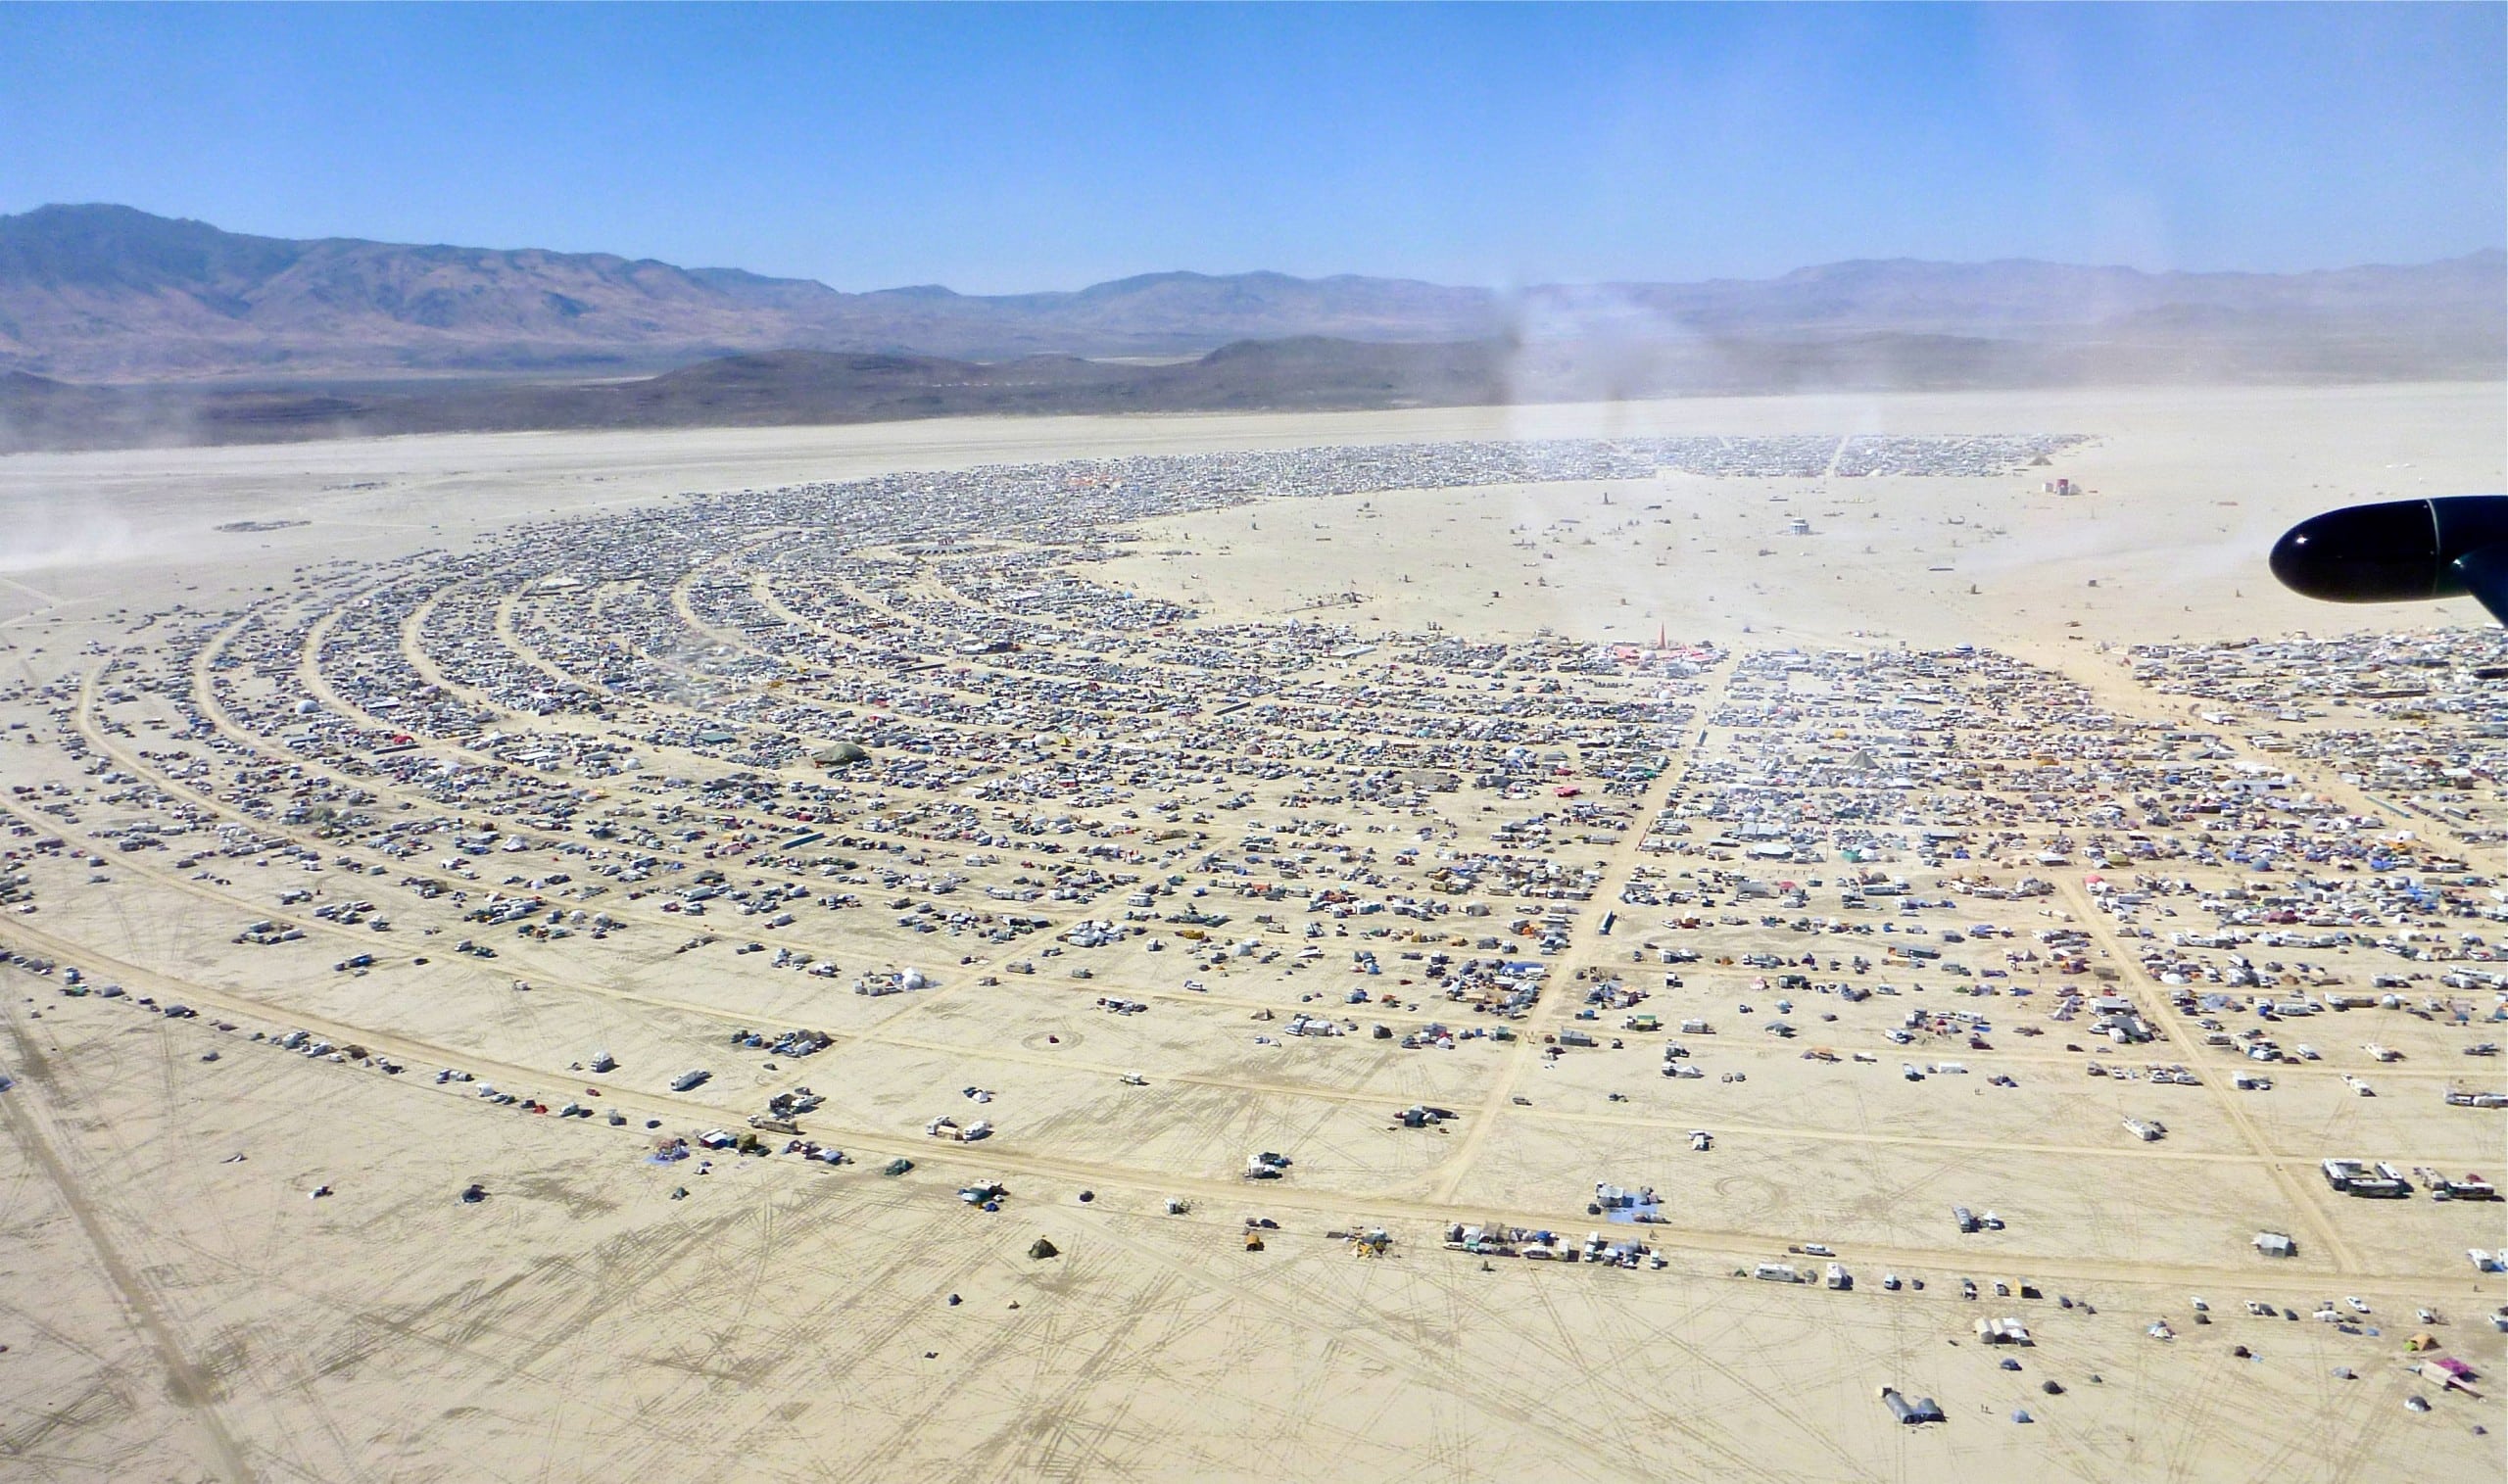 Radiale Stadtstruktur des Burning Man. Foto via Wiki Commons: Steve Jurvetson from Menlo Park, USA, Burning Man 2012 festival from the air